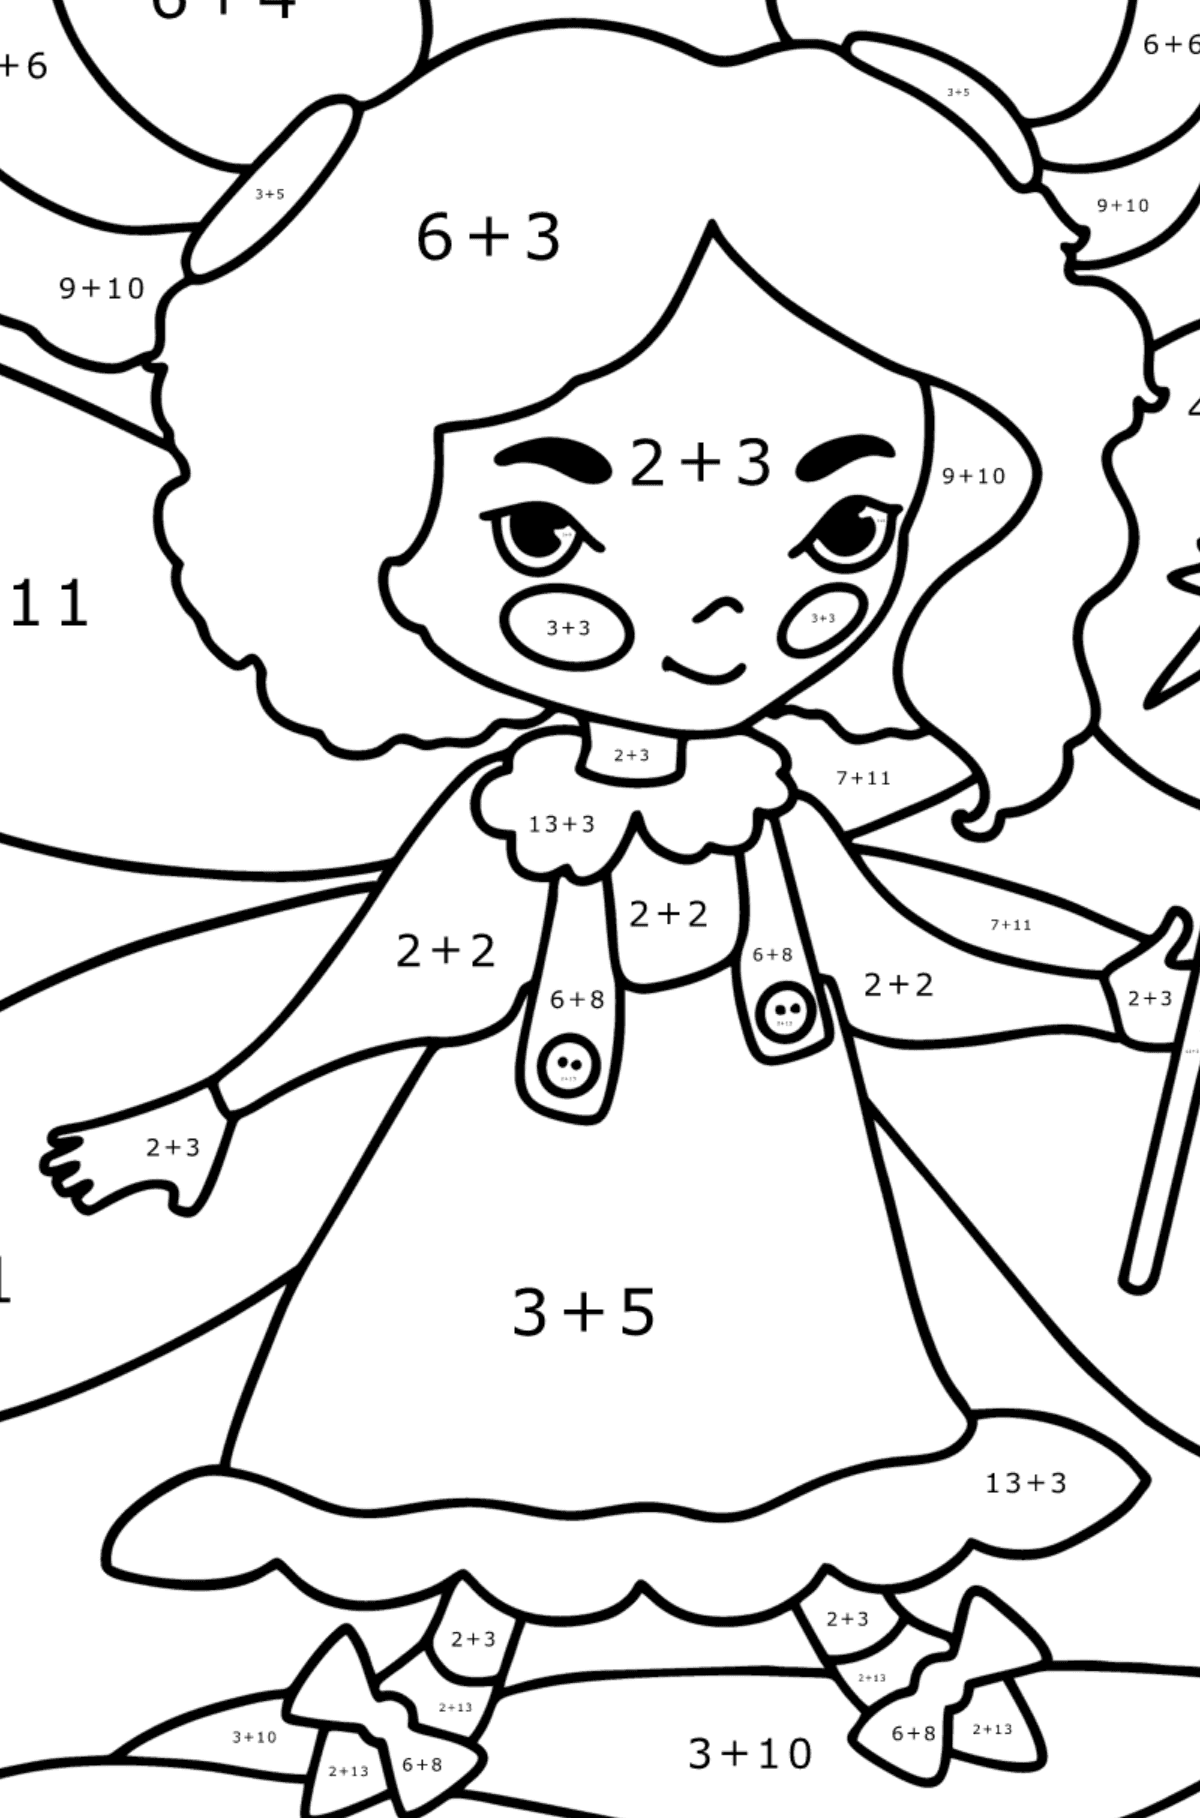 Disegno di Fata con una bacchetta magica da colorare - Colorazione matematica - Addizione per bambini